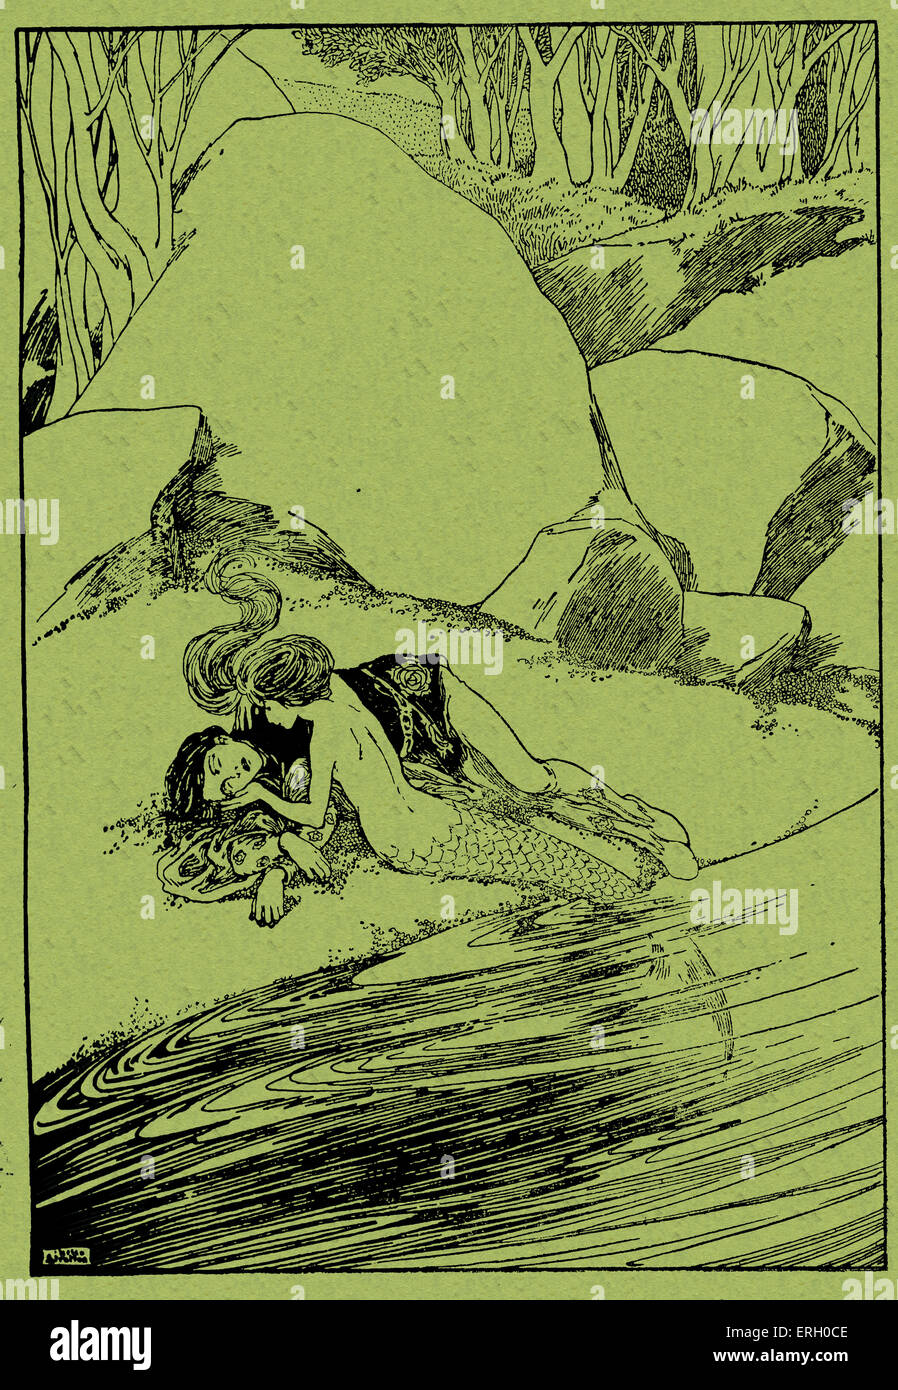 Hans Christian Andersen cuentos de hadas, La Sirenita. Título reza: "Él lo puso sobre la cálida arena' (sirenita Foto de stock